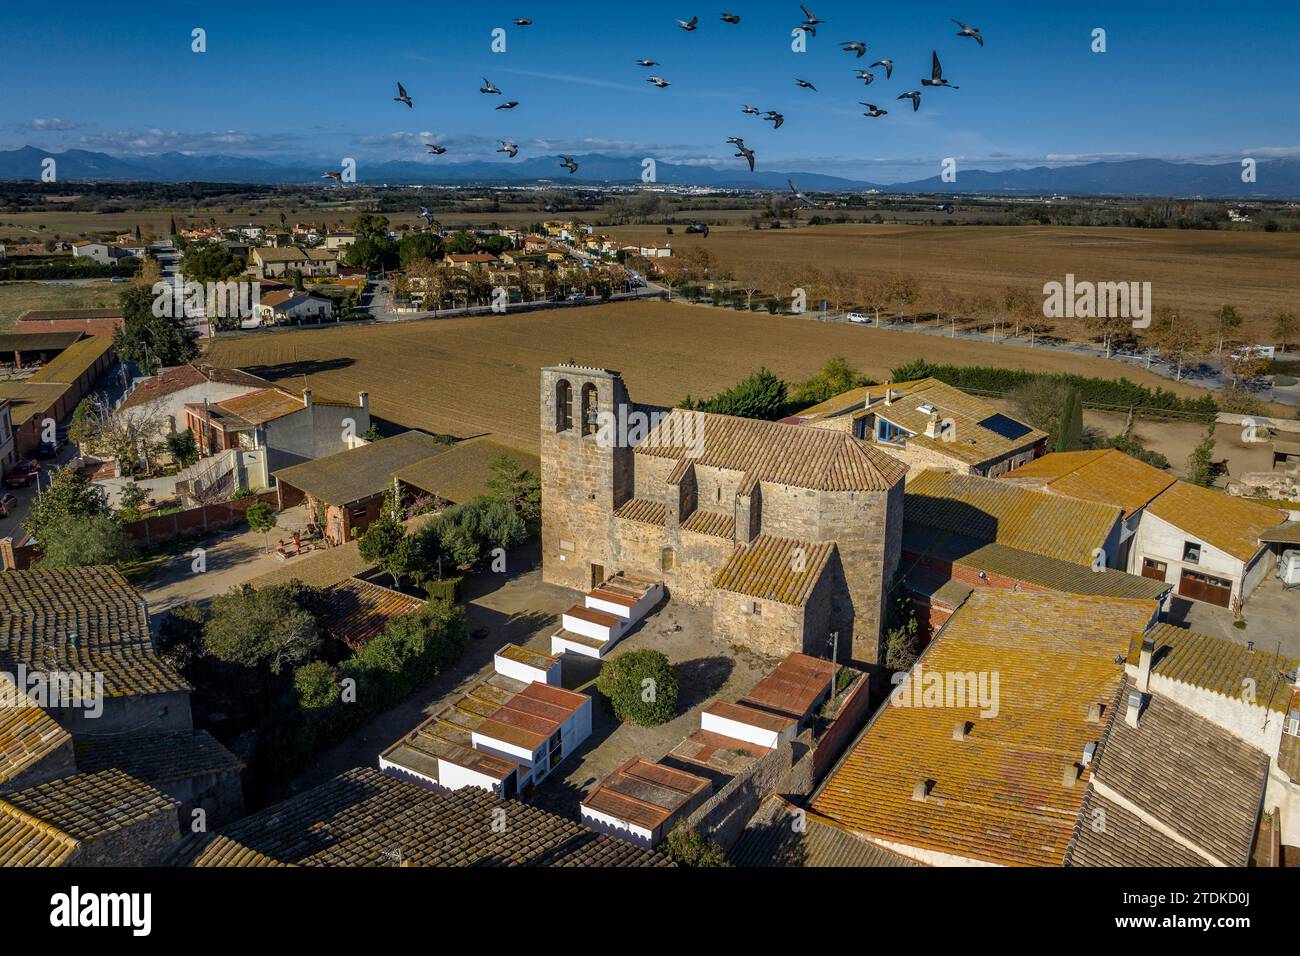 Vue aérienne du village de Vilacolum, à Torroella de Fluvià, et de l’église de Sant Esteve de Vilacolum (Alt Empordà, Gérone, Catalogne, Espagne) Banque D'Images